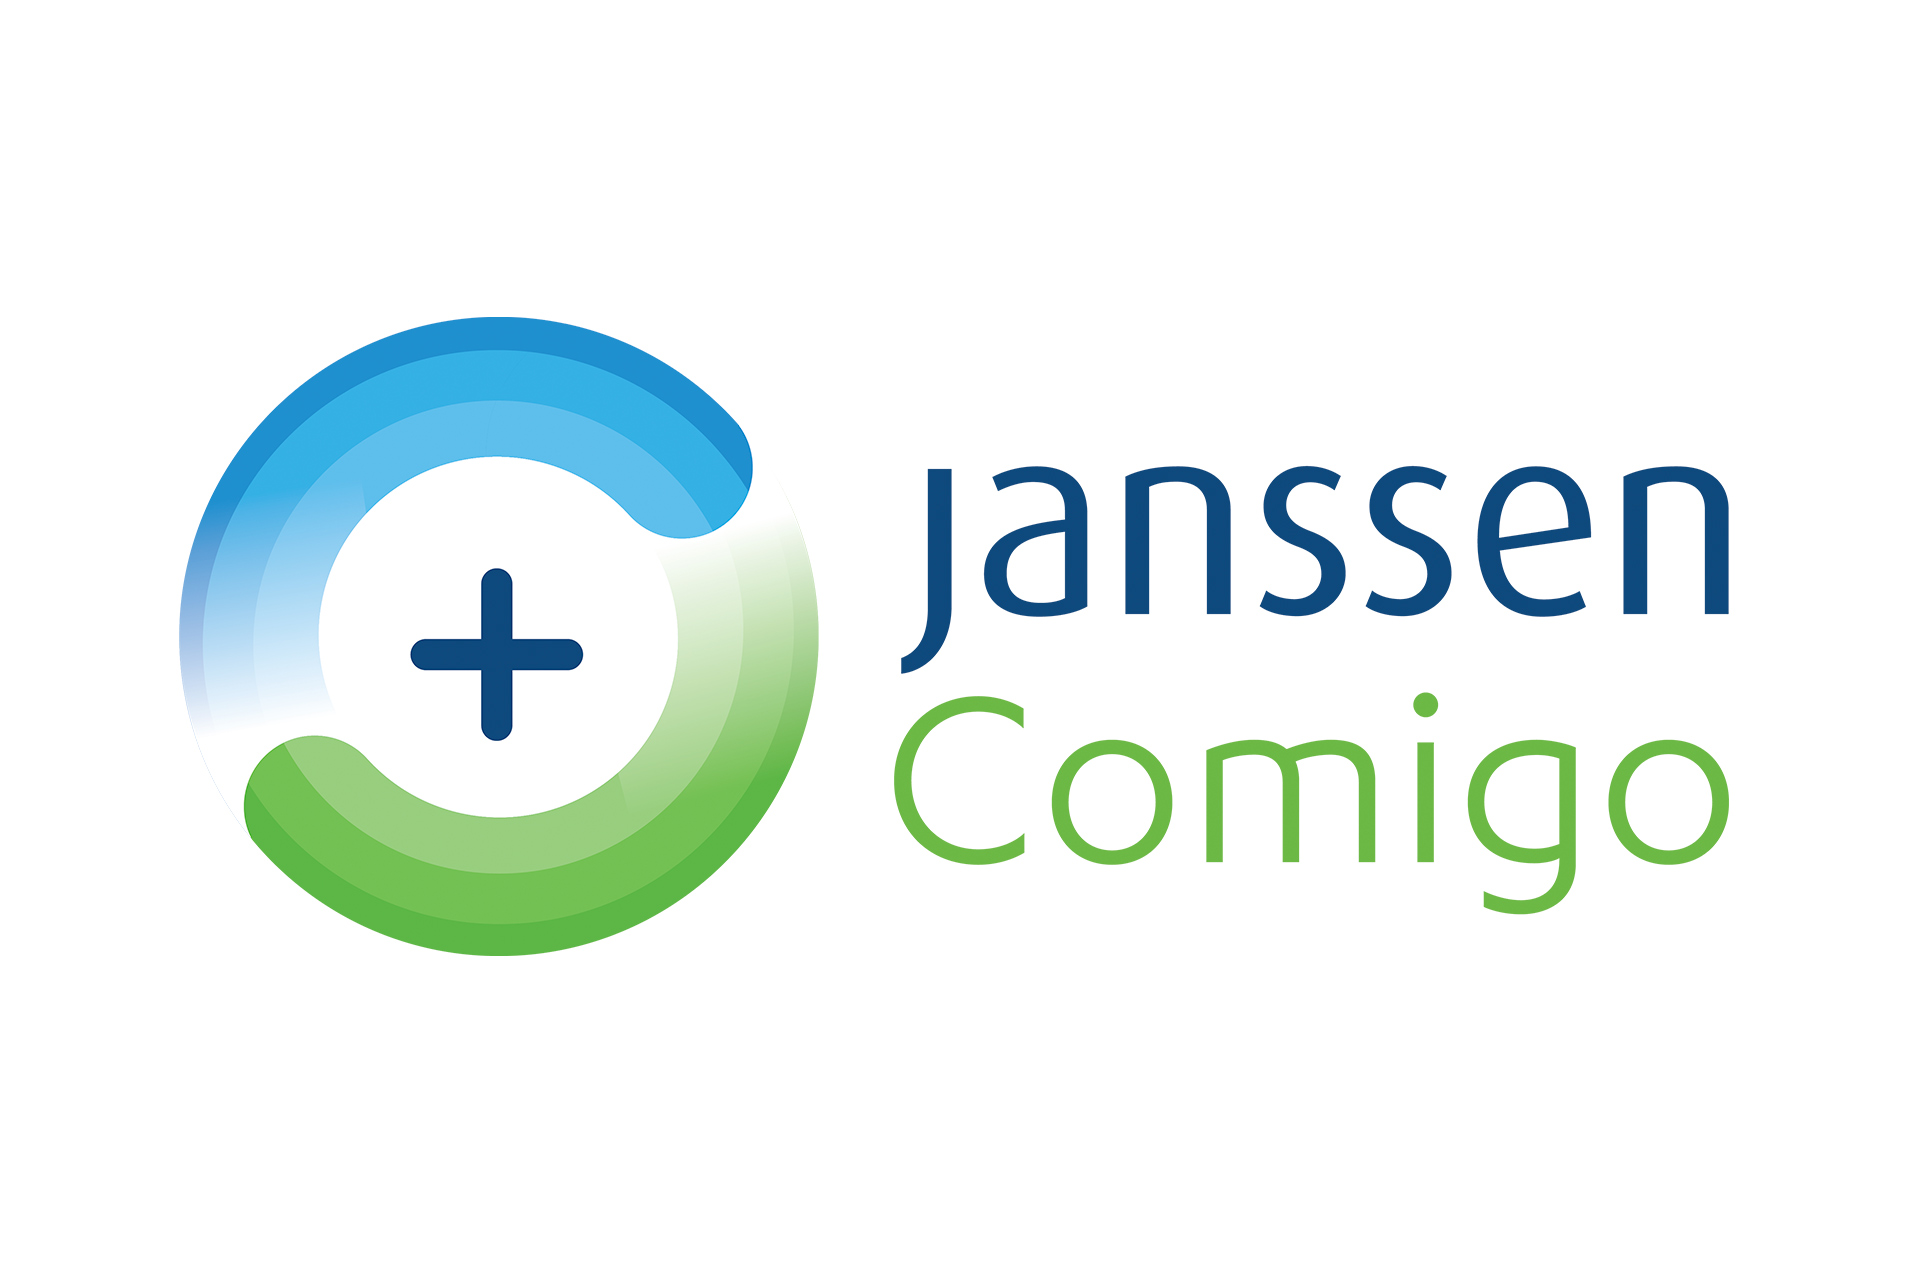 Logótipo do website Janssen Comigo.